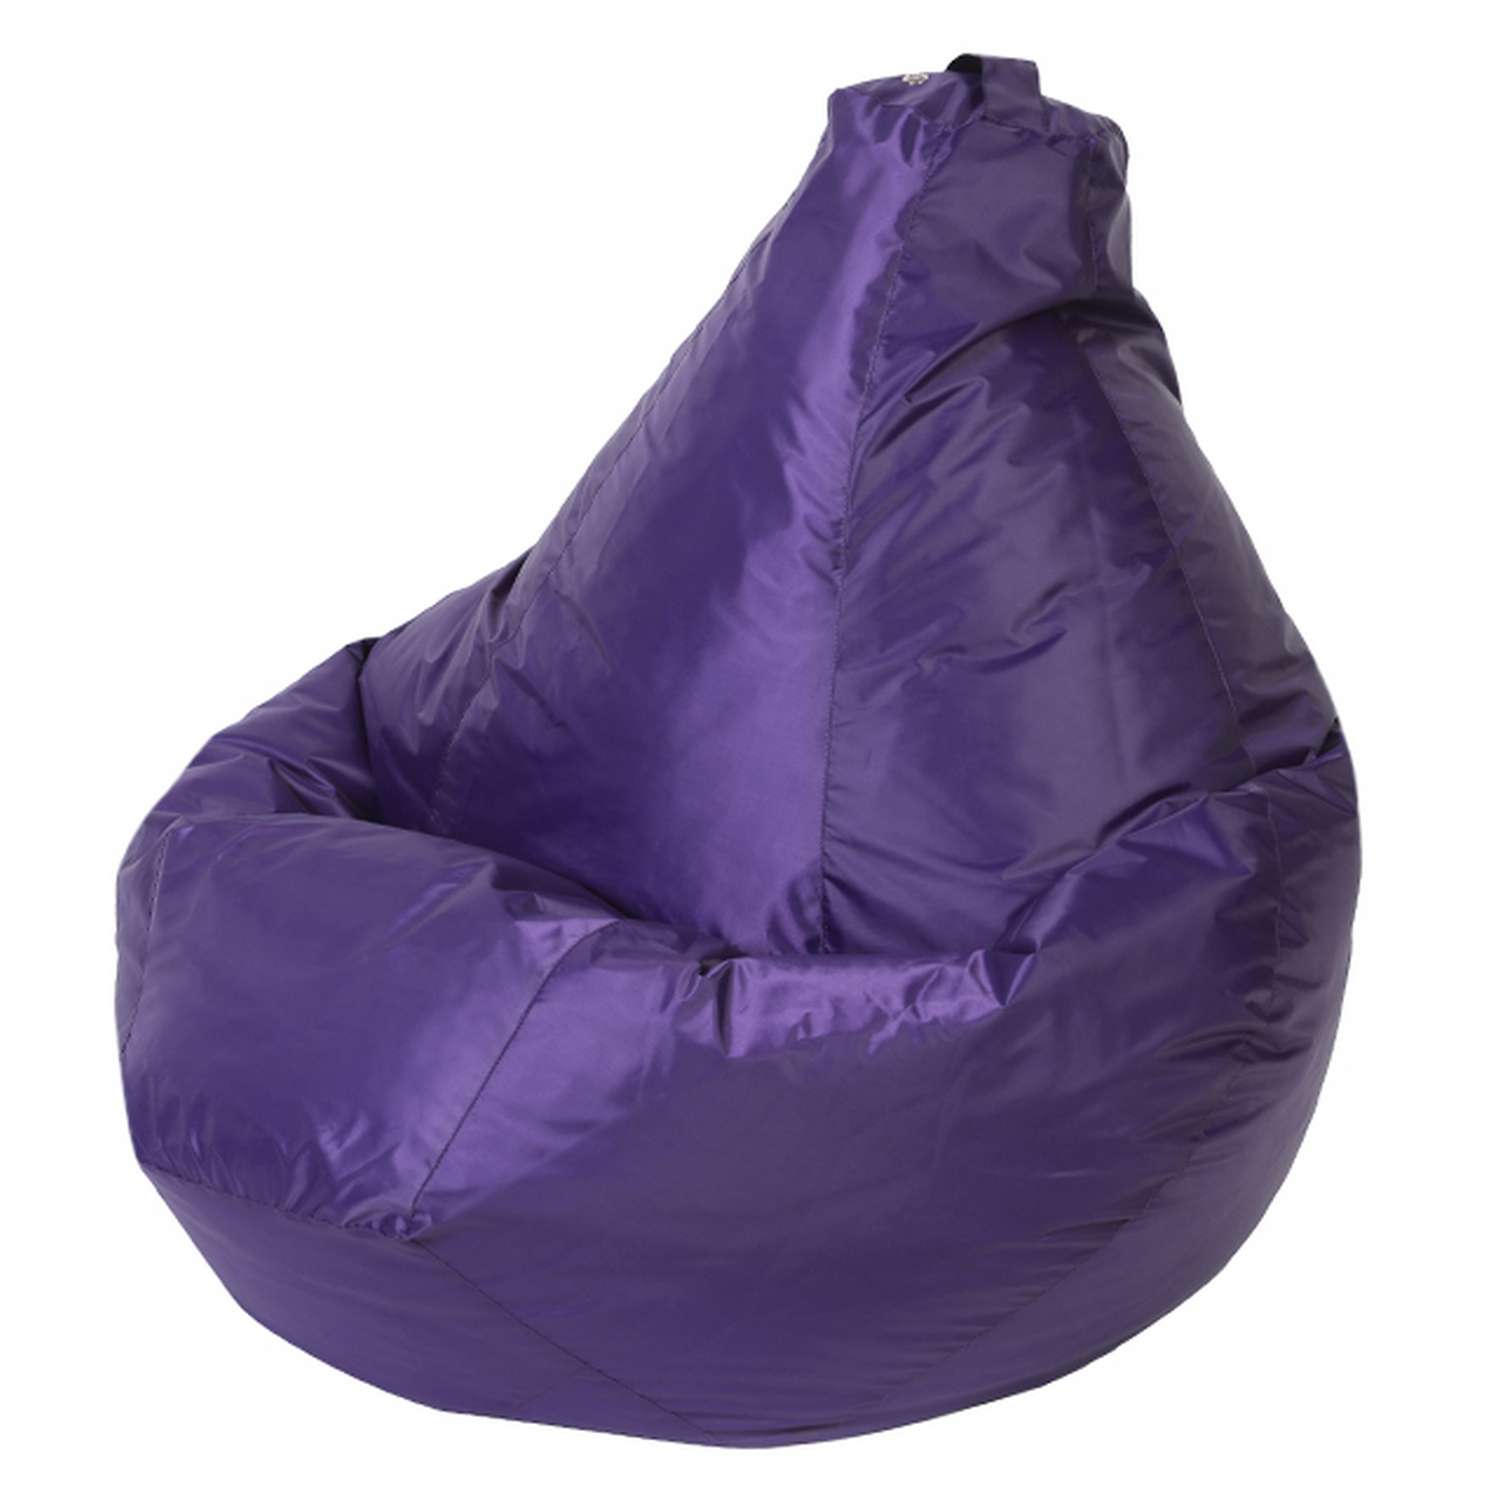 Кресло-мешок DreamBag XL Фиолетовое - фото 1